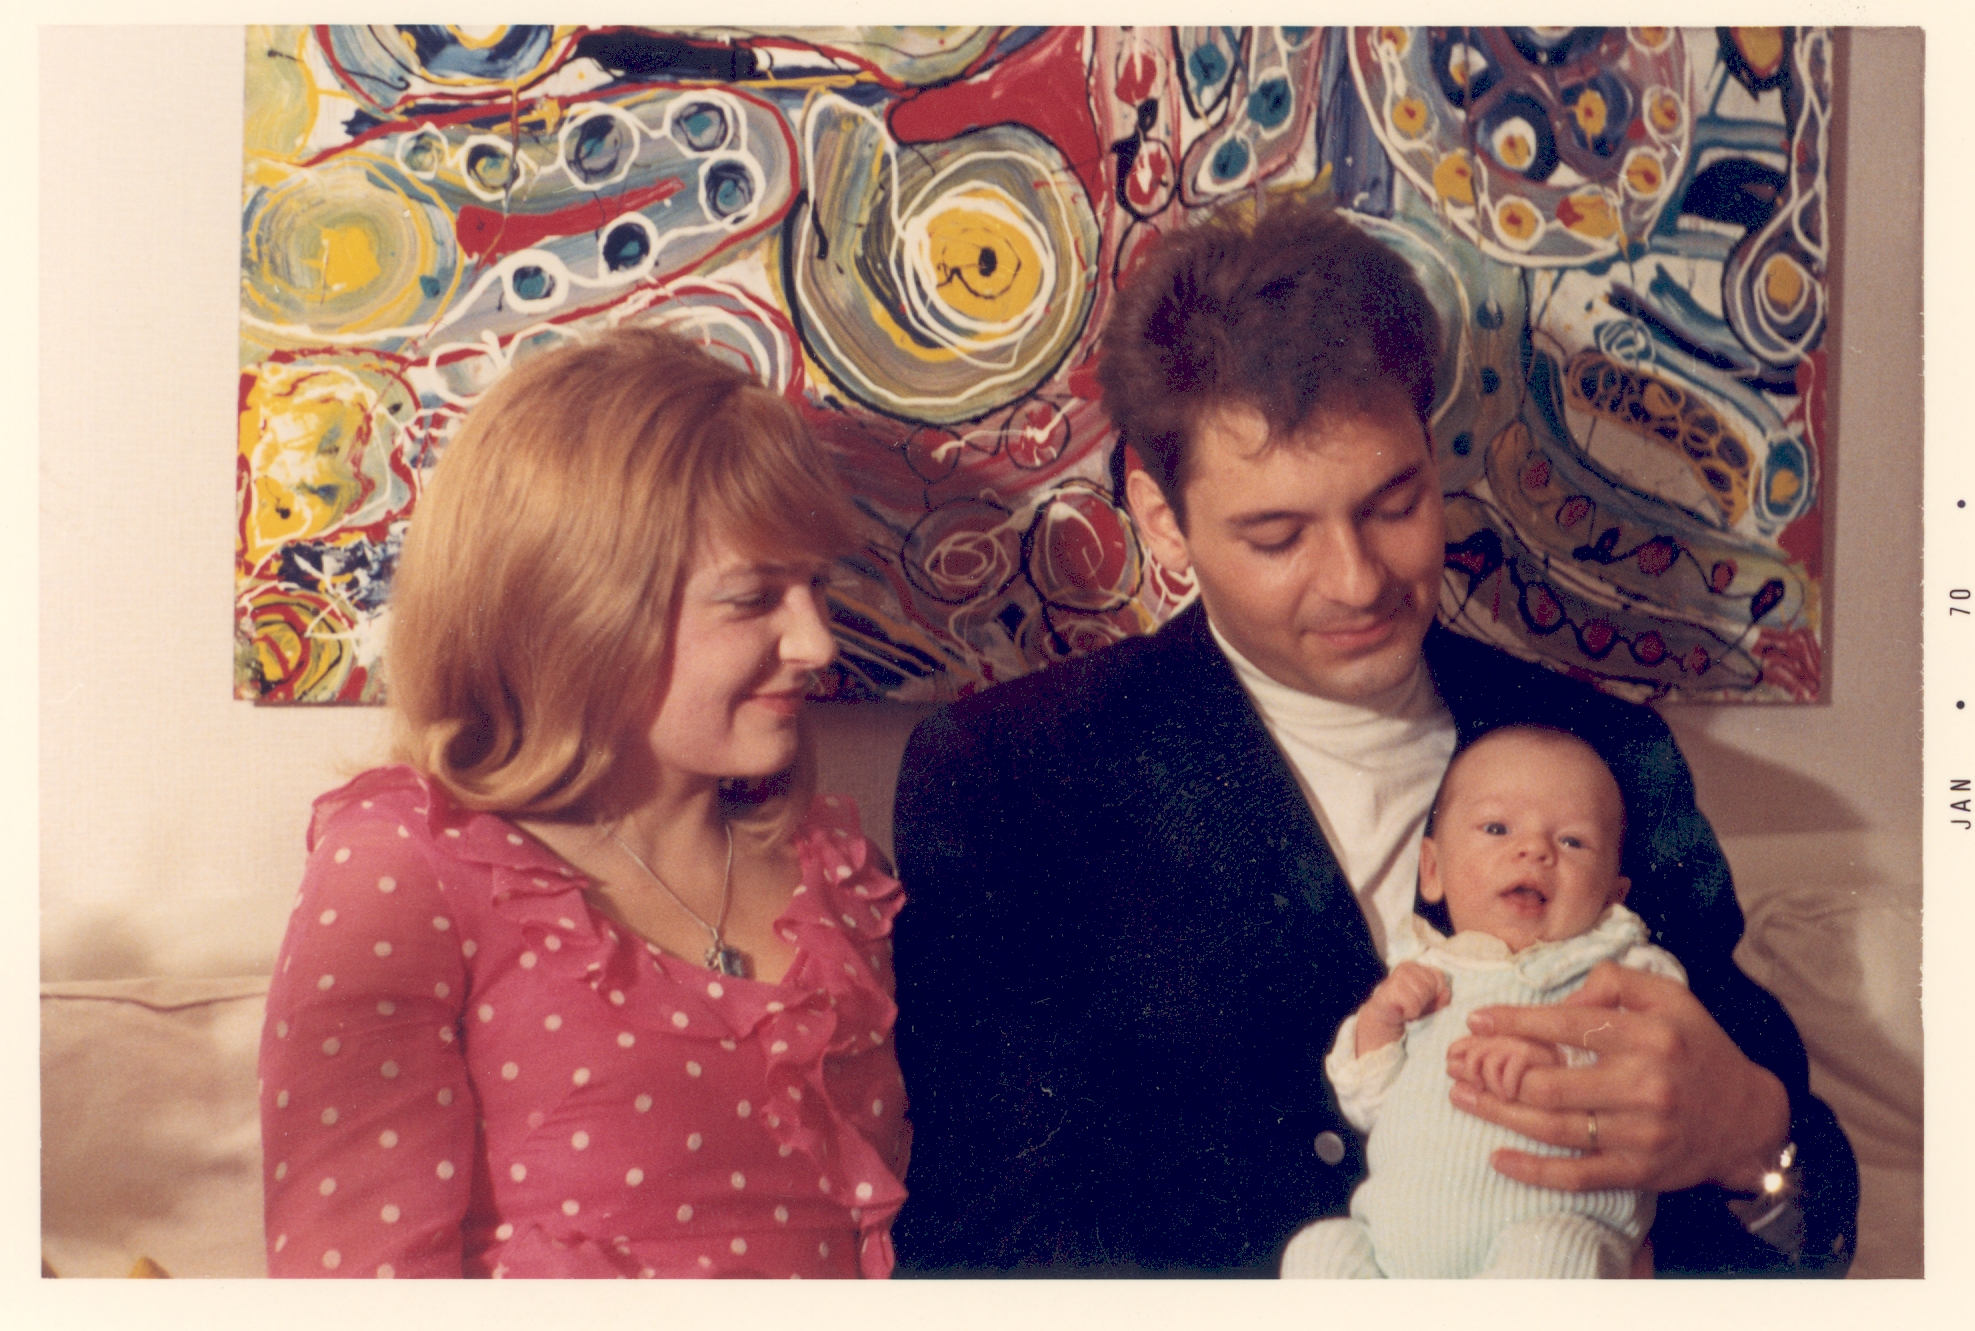 Silvia and Fred Ziegler's son Martin